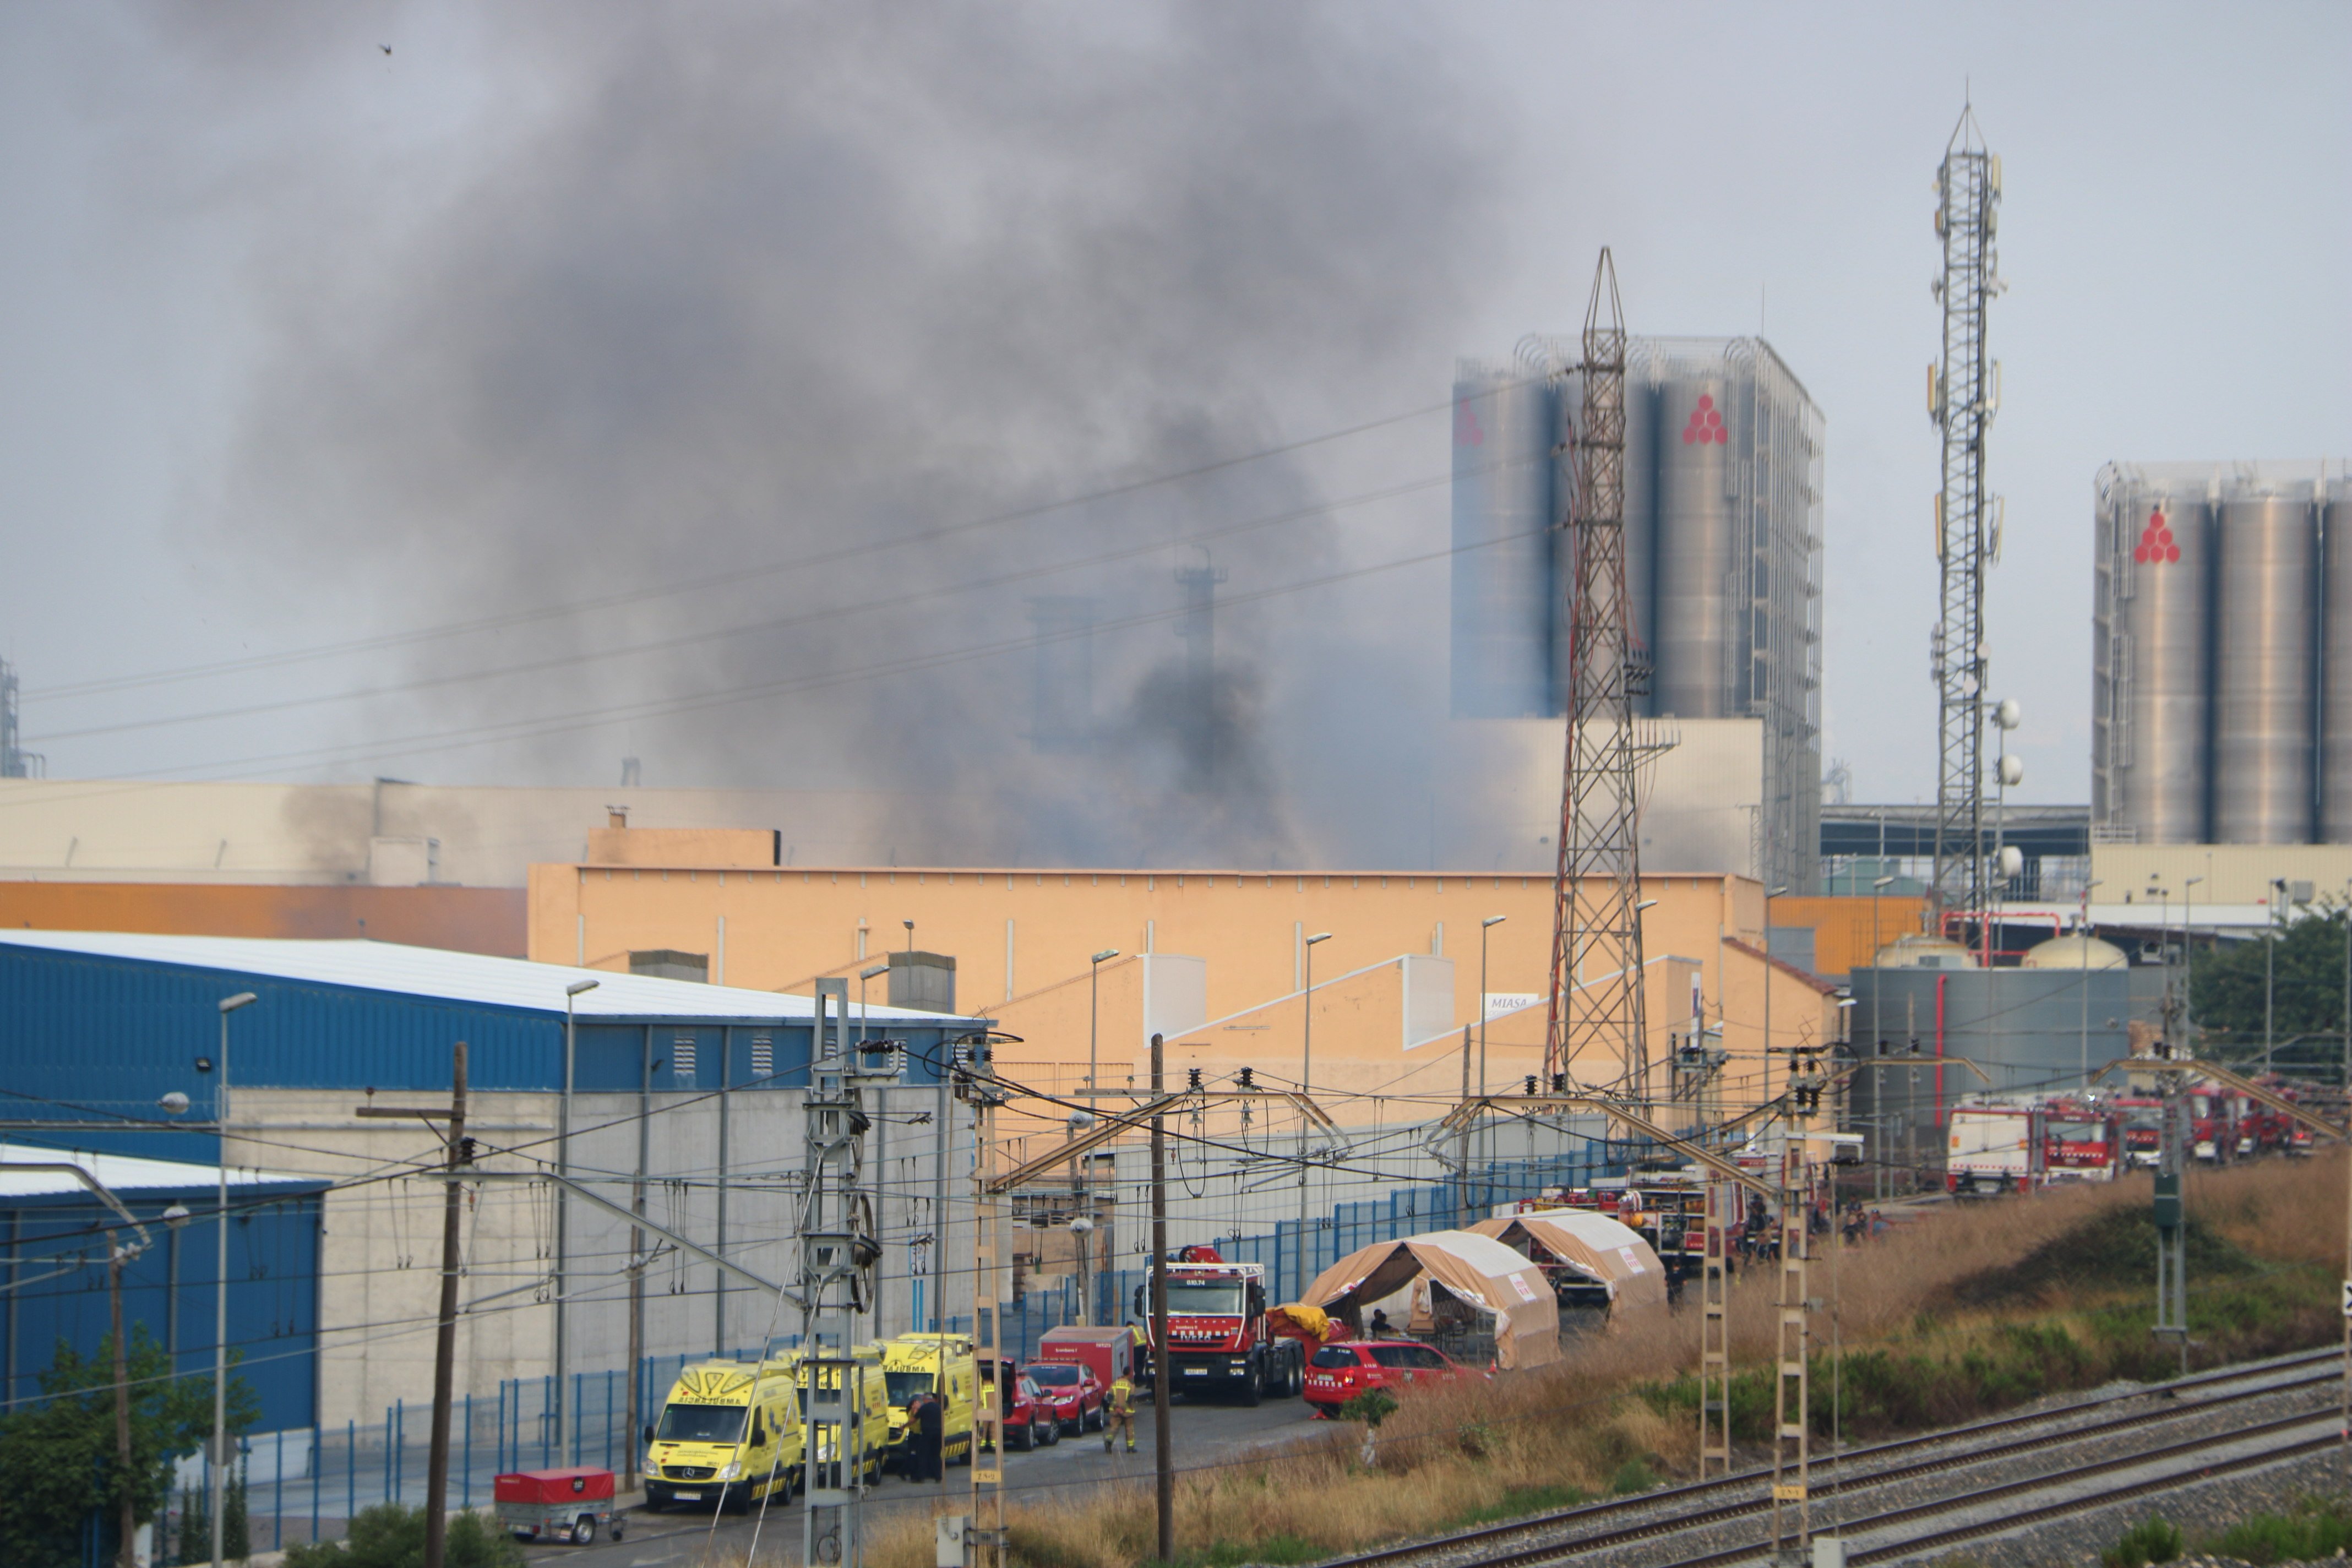 Activat el pla d'emergències químiques per un incendi en una empresa a Tarragona